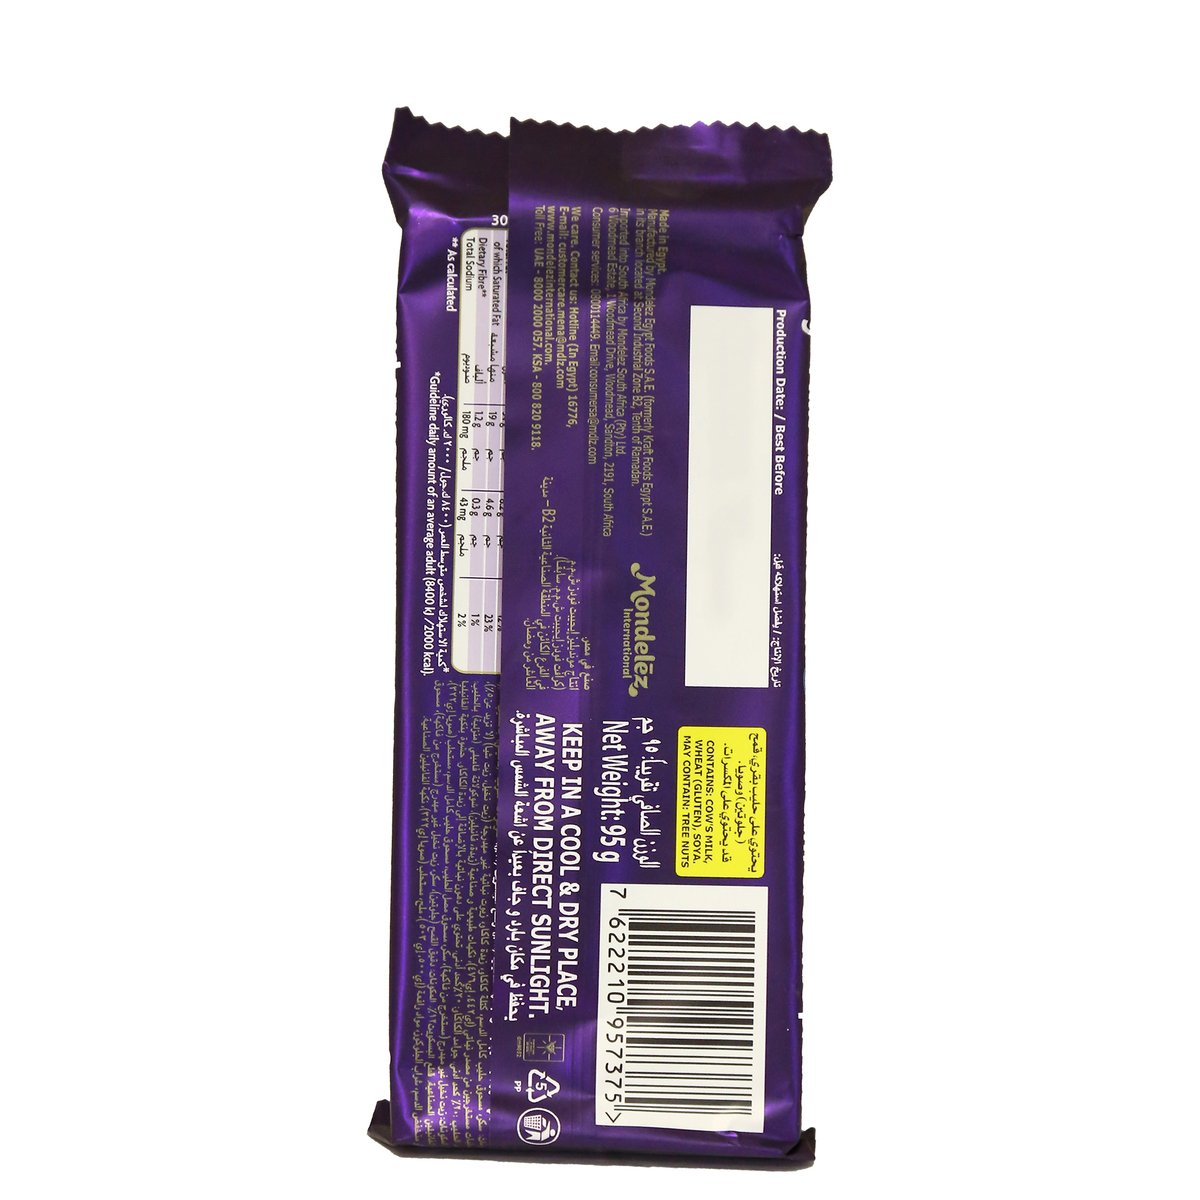 Cadbury Dairy Milk Oreo 95 g